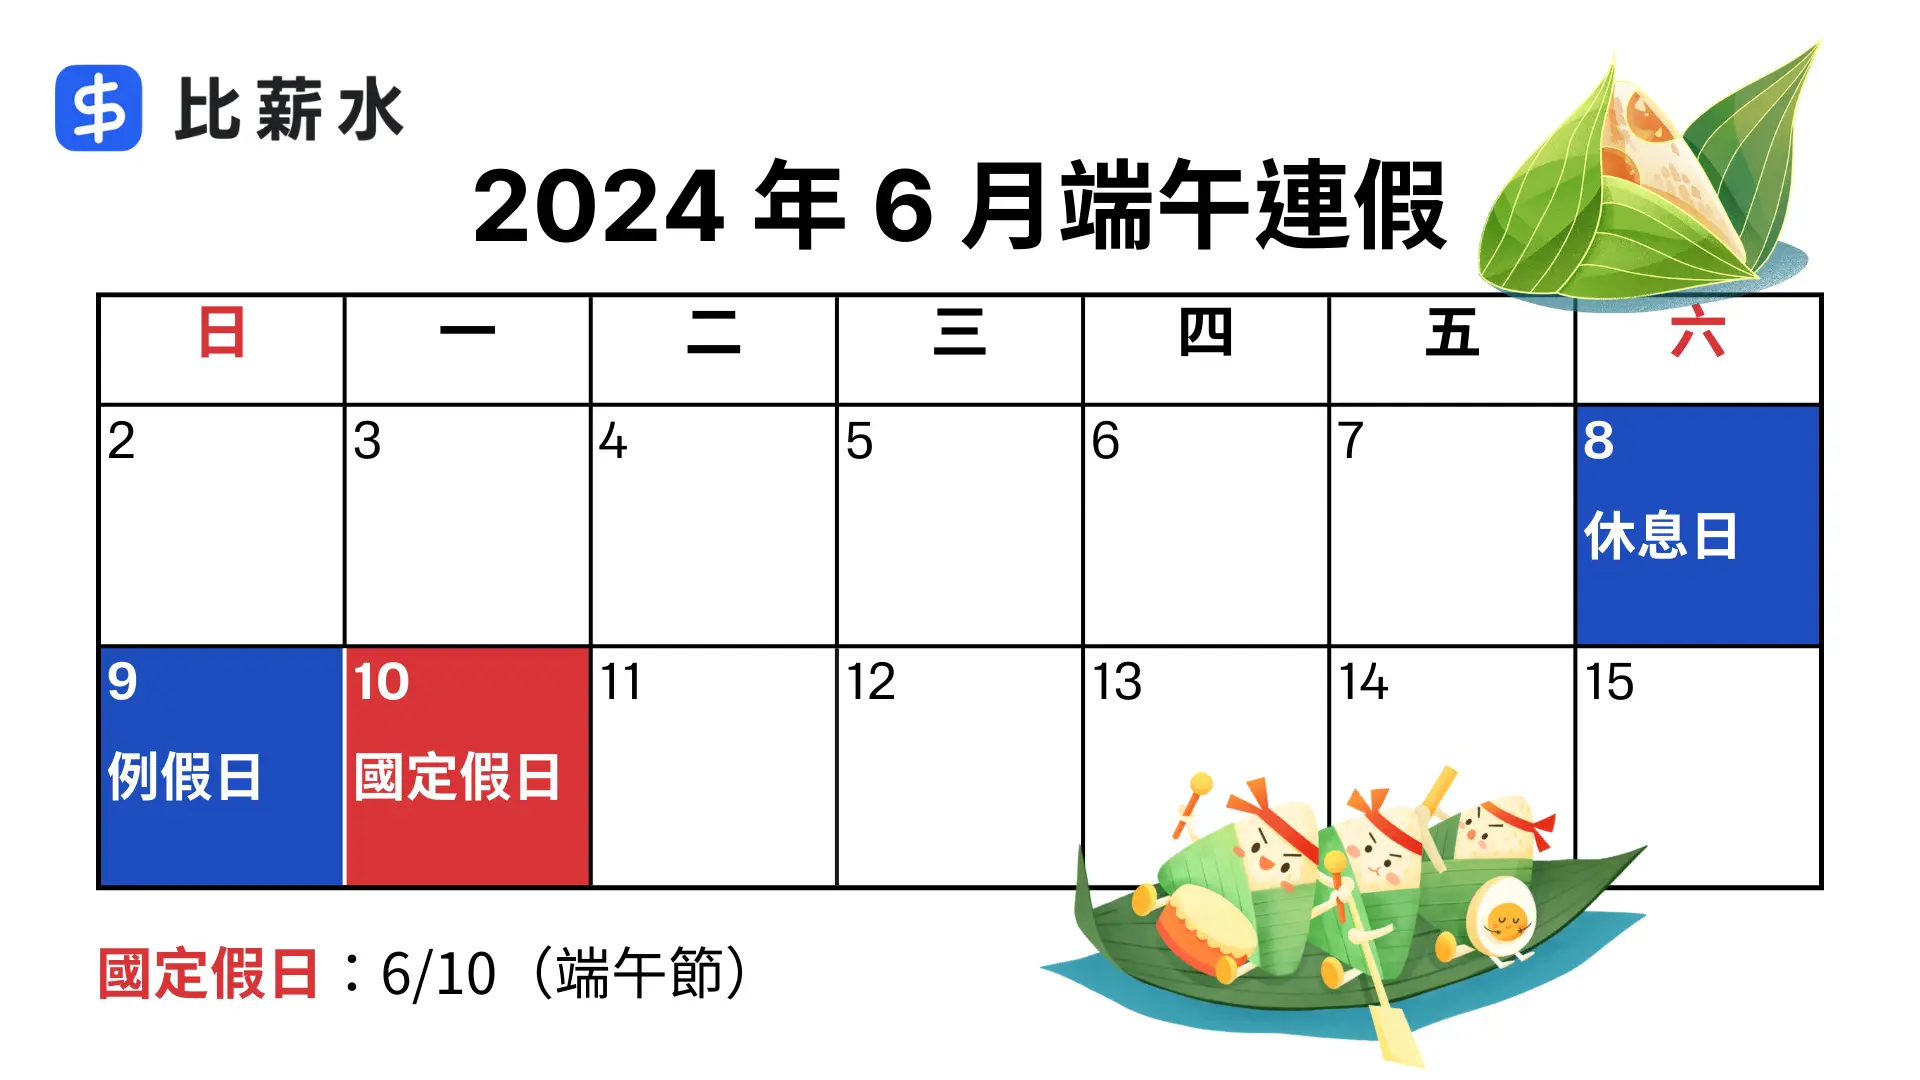 2024端午節連假日期-國定假日